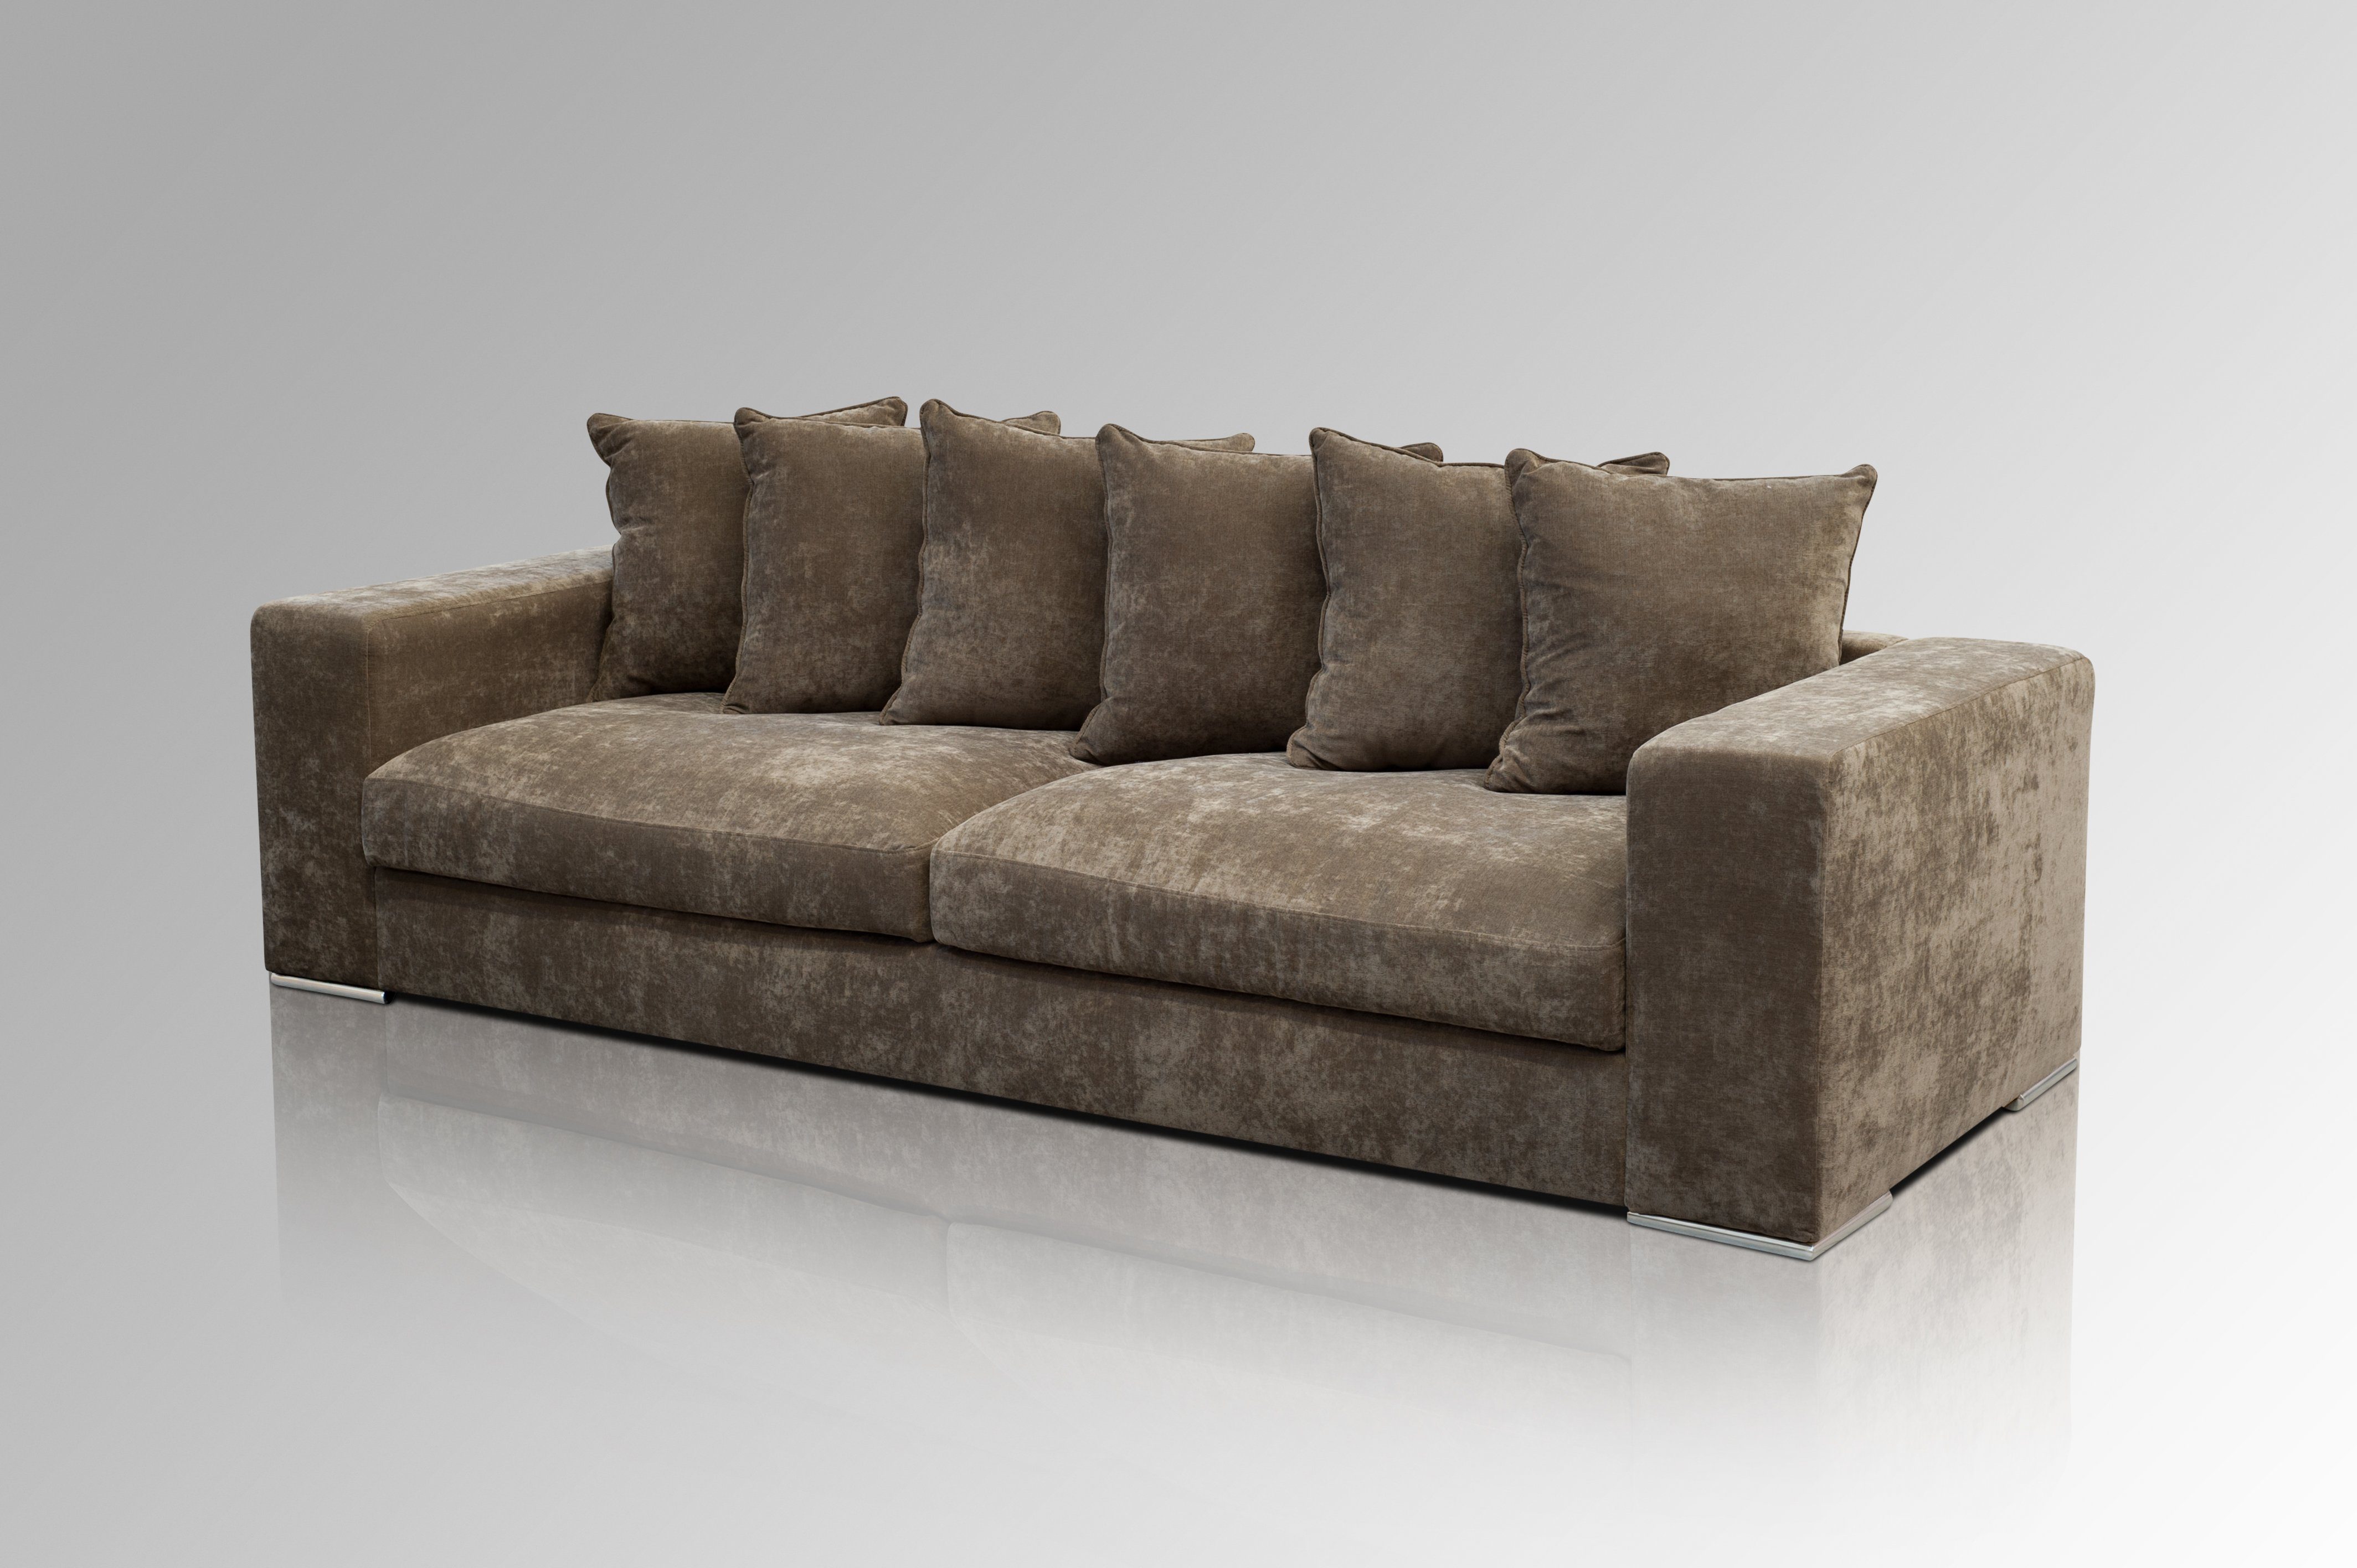 AMARIS Elements Sofa Samt Sofa 'Monroe' 4 Sitzer XL Big Sofa Wohnzimmer Couch in 4 Größen, Made in Europe Braun (Samt)